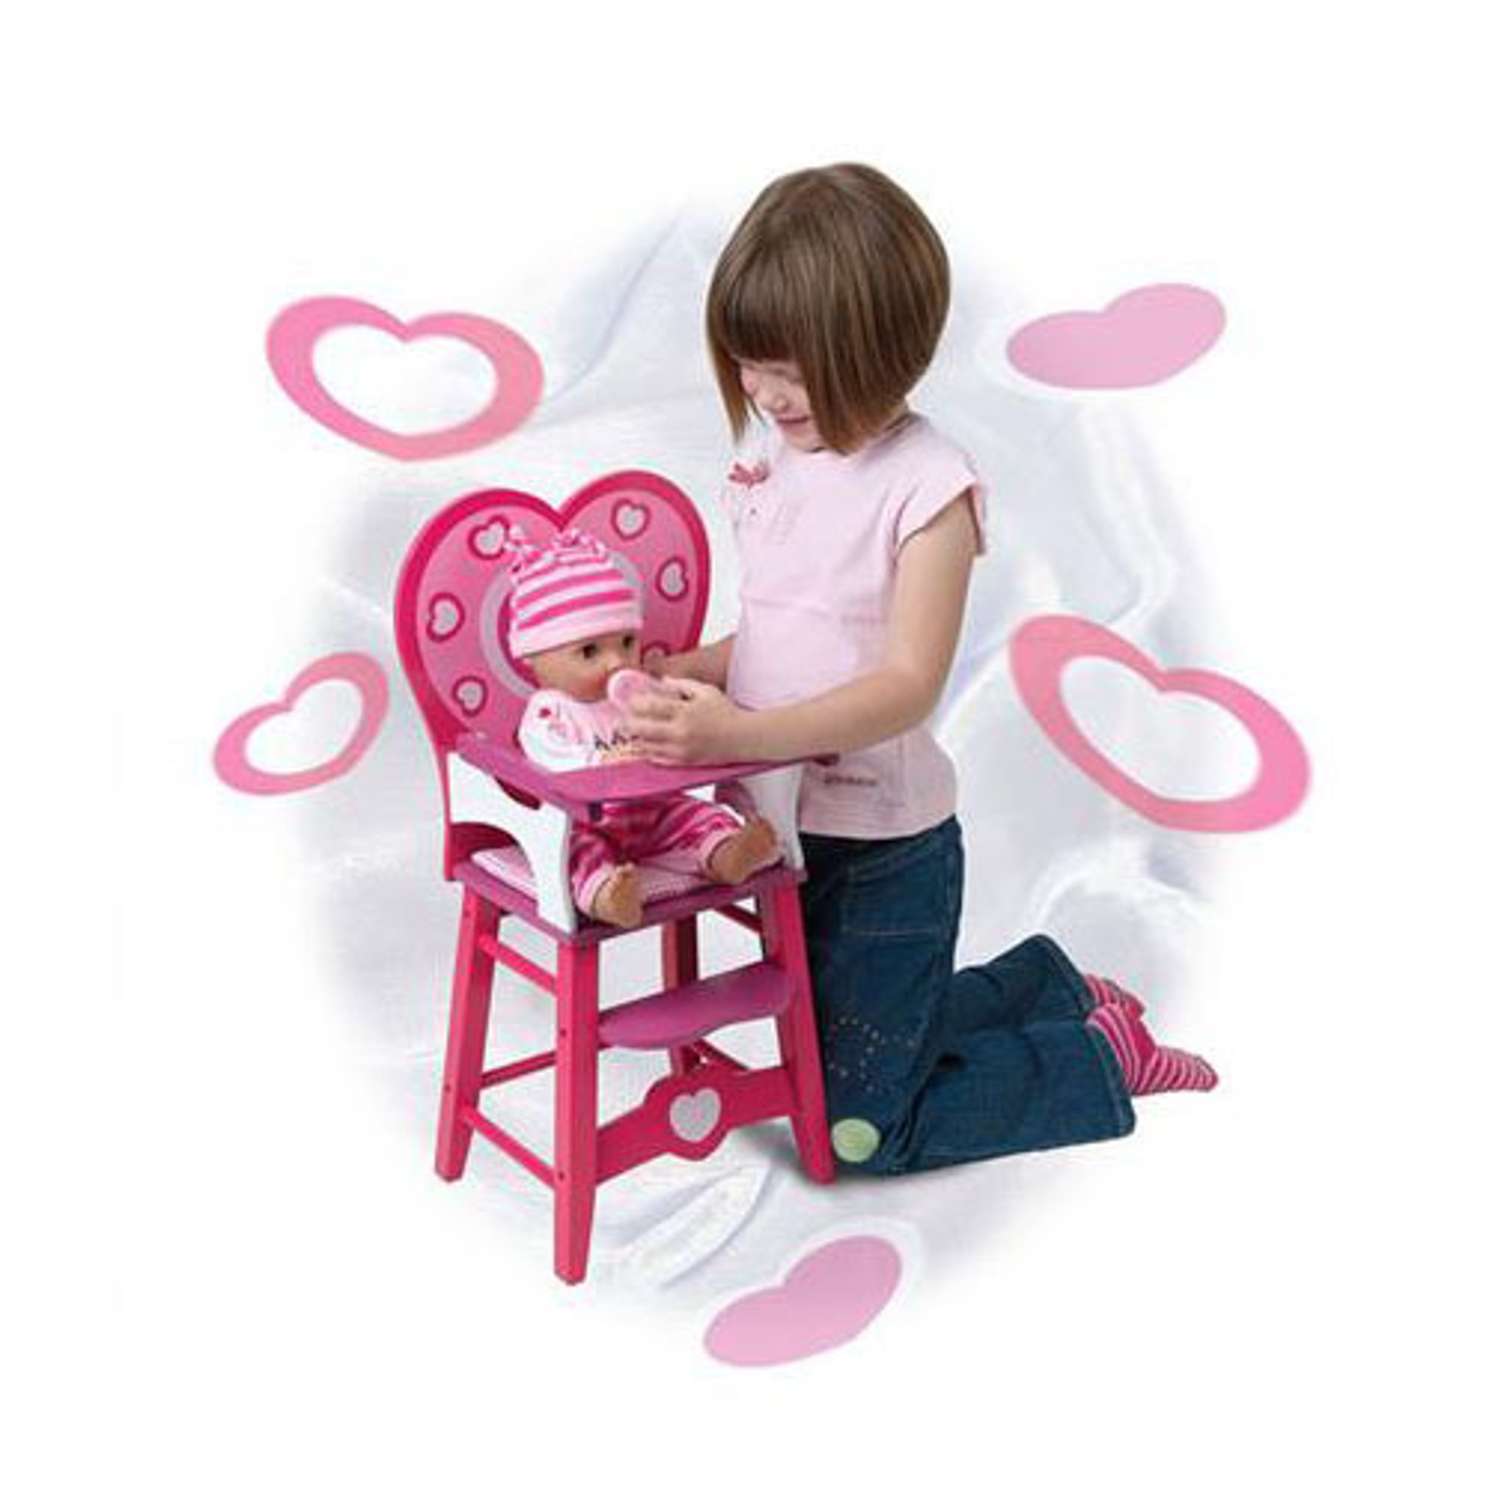 Мебель кукольная Devik Toys Деревянный стульчик 8610 - фото 2